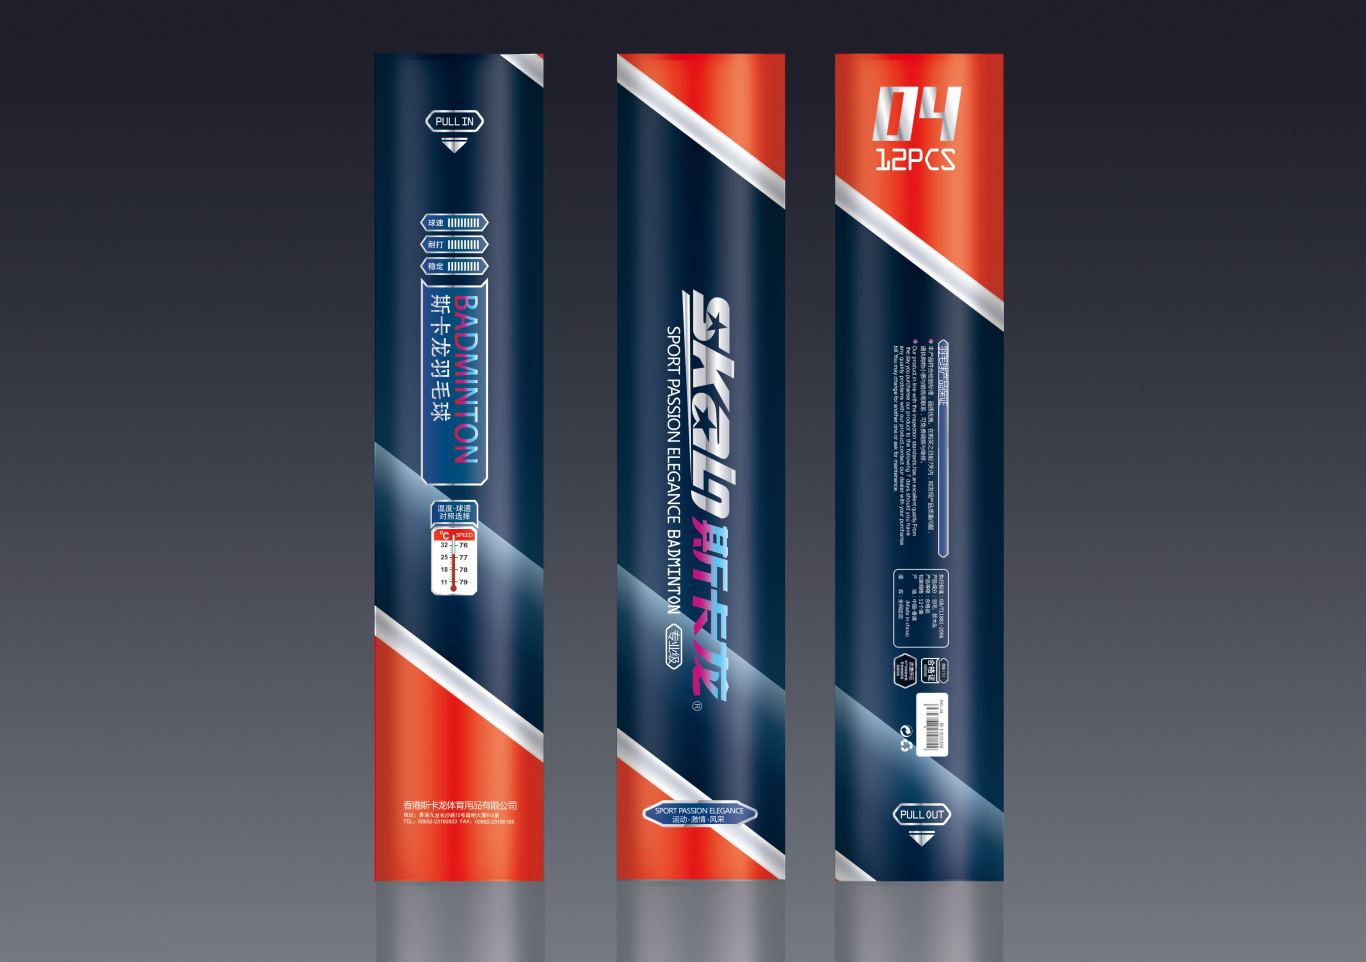 某运动品牌羽毛球包装设计图1